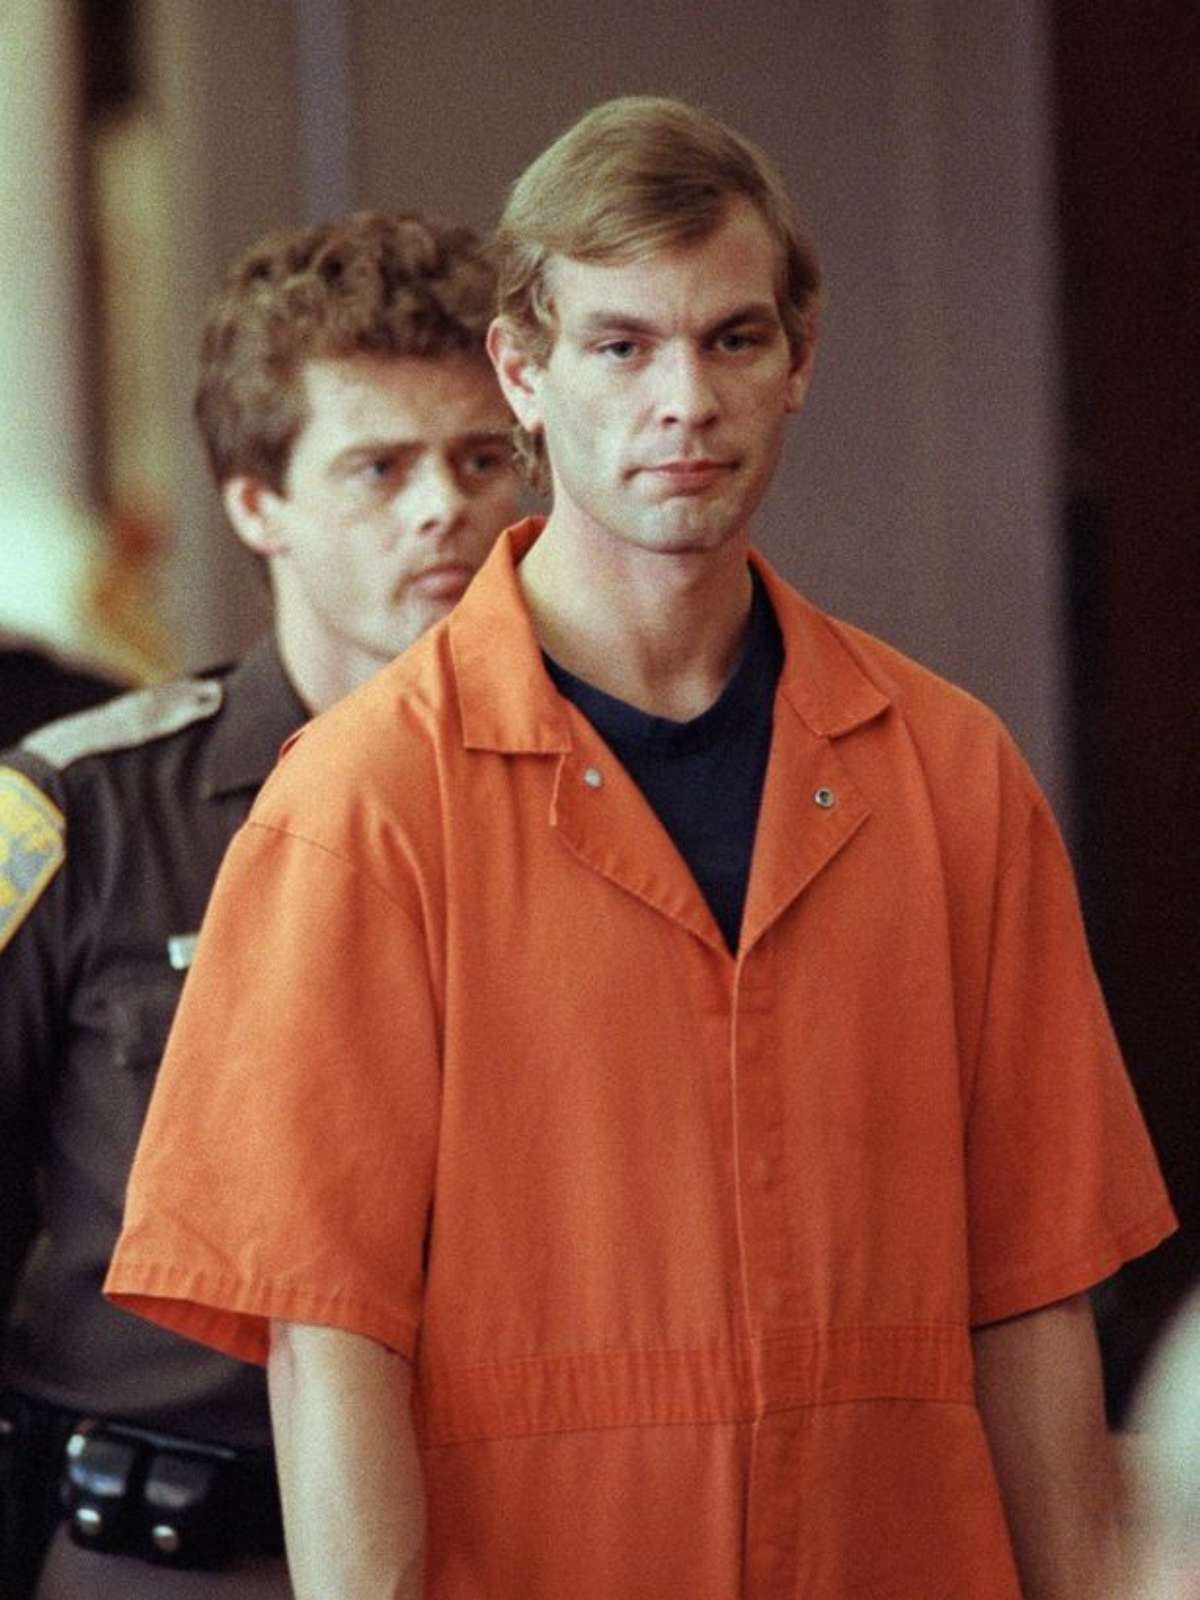 Passou dos limites”: como e por que Jeffrey Dahmer foi assassinado?